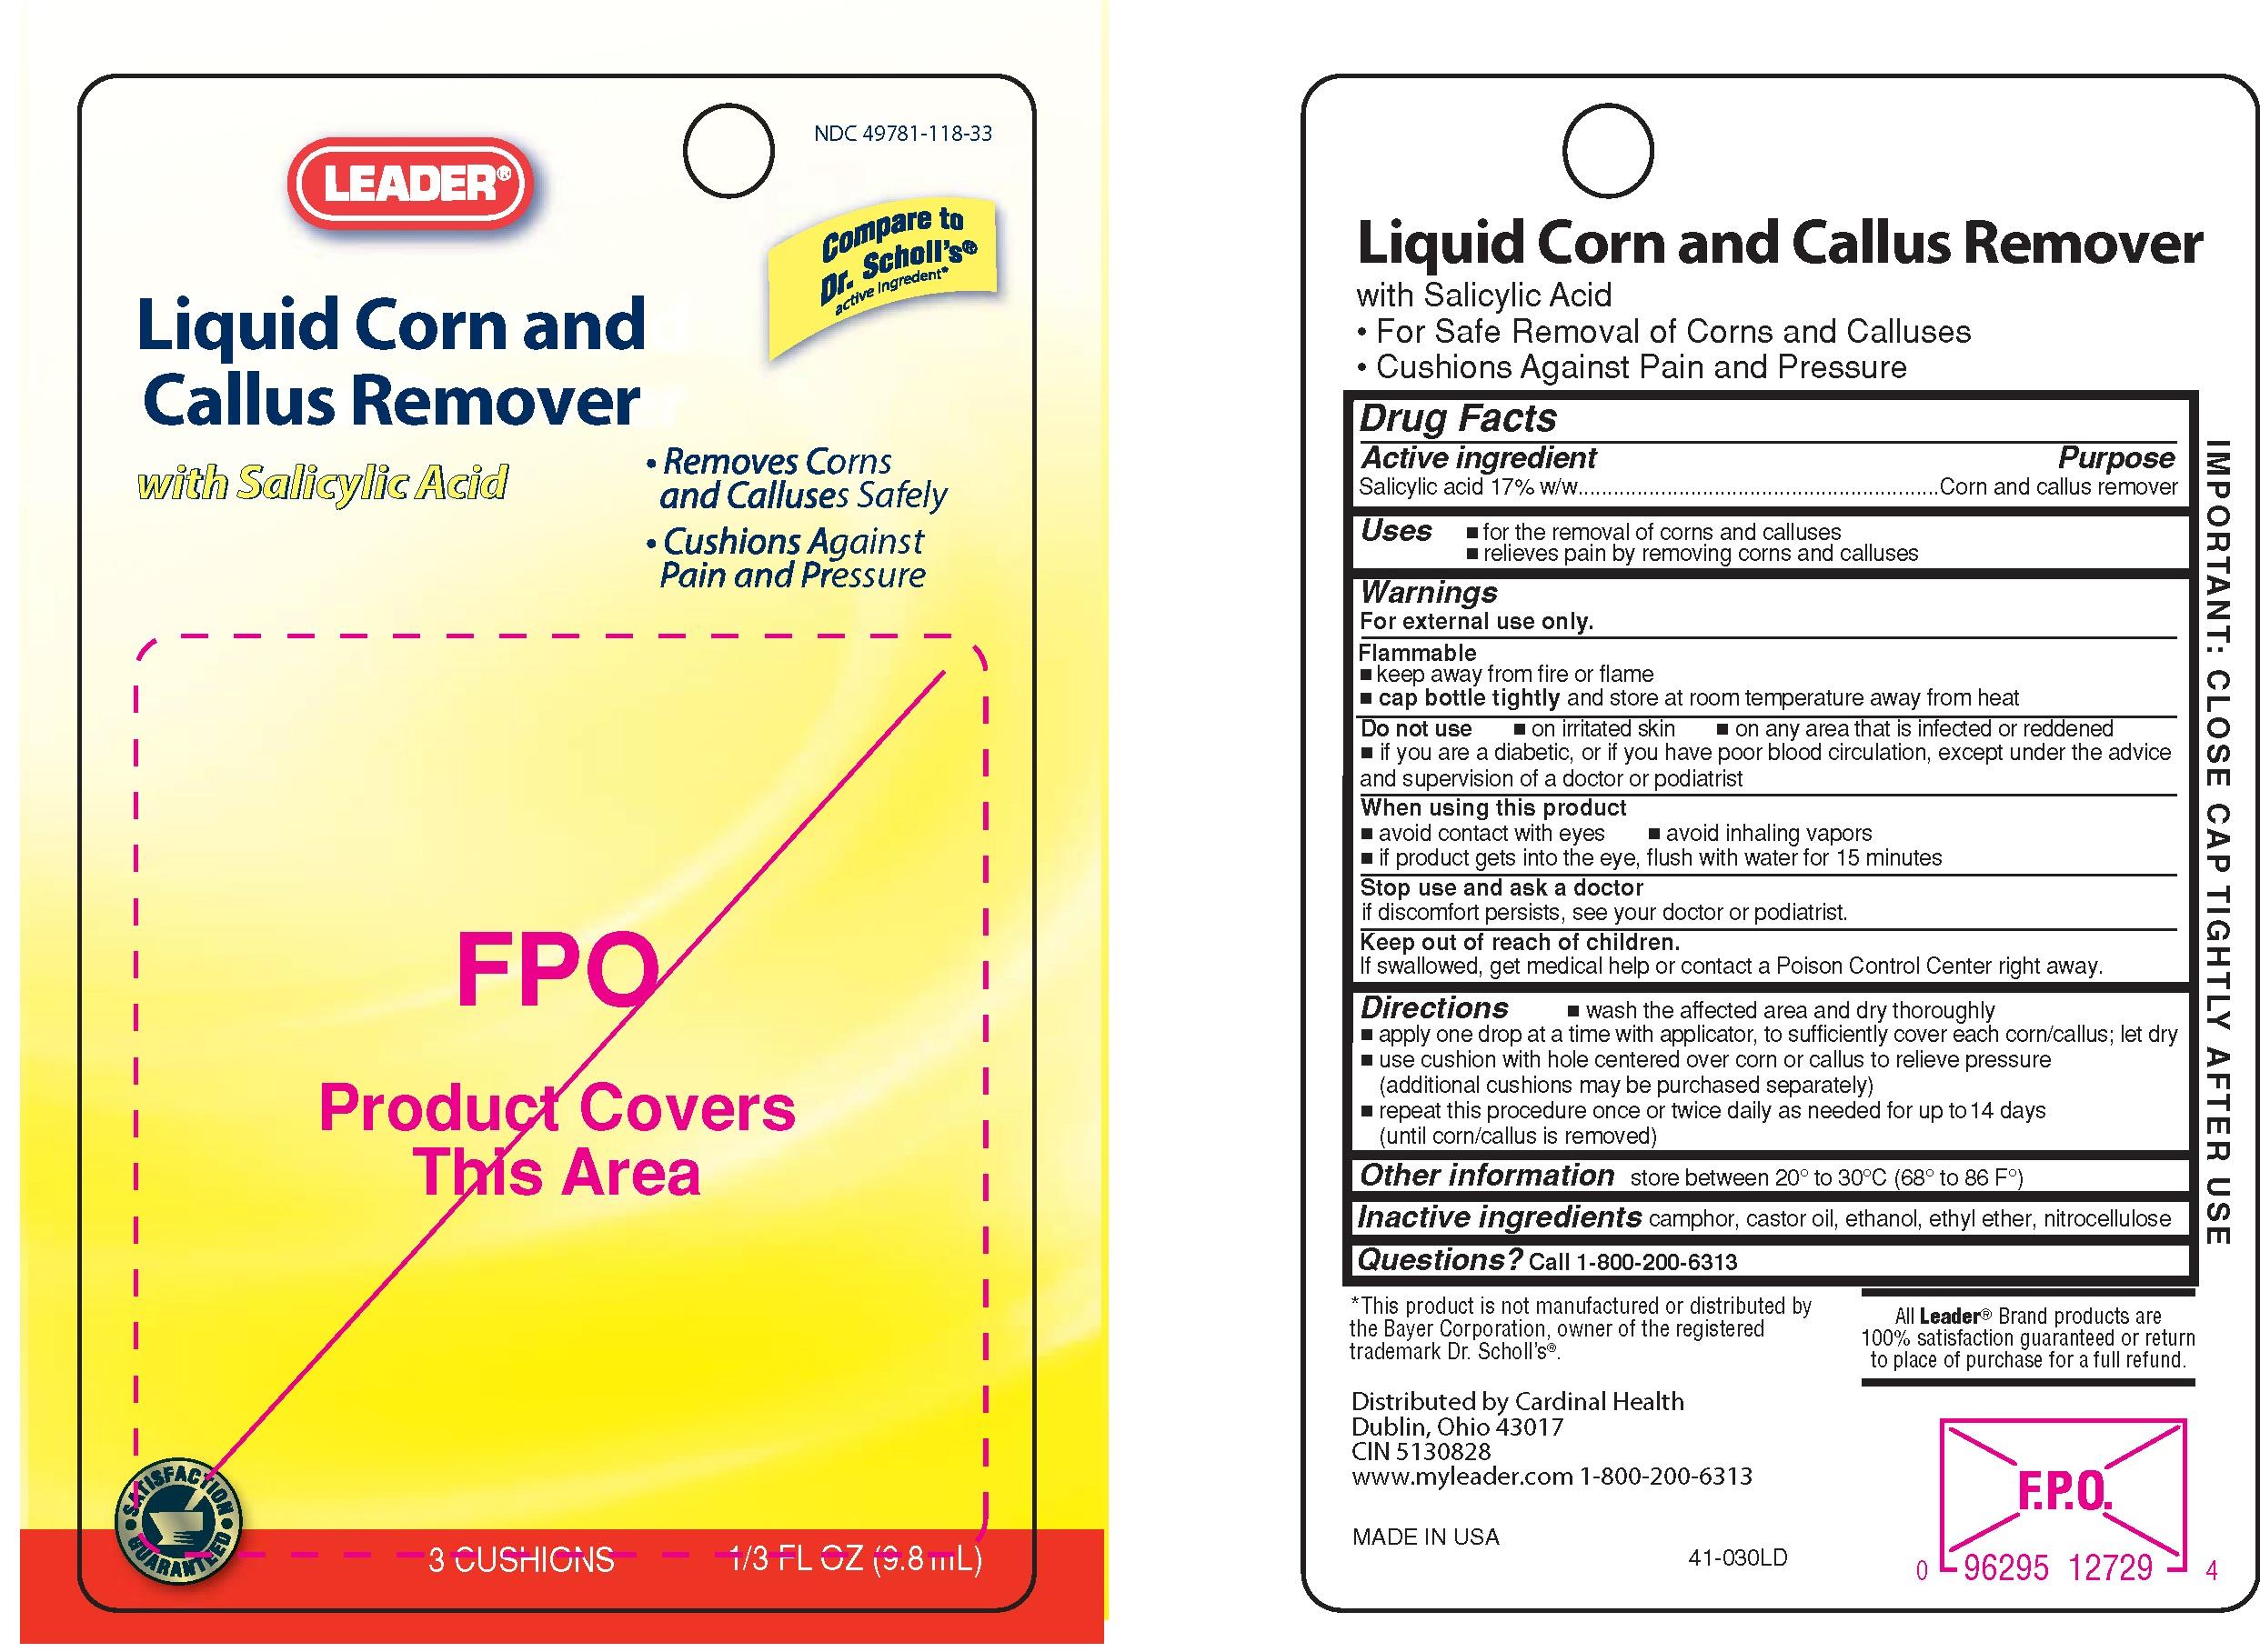 Leader-Liq Corn  Callus card -41-030LD.jpg